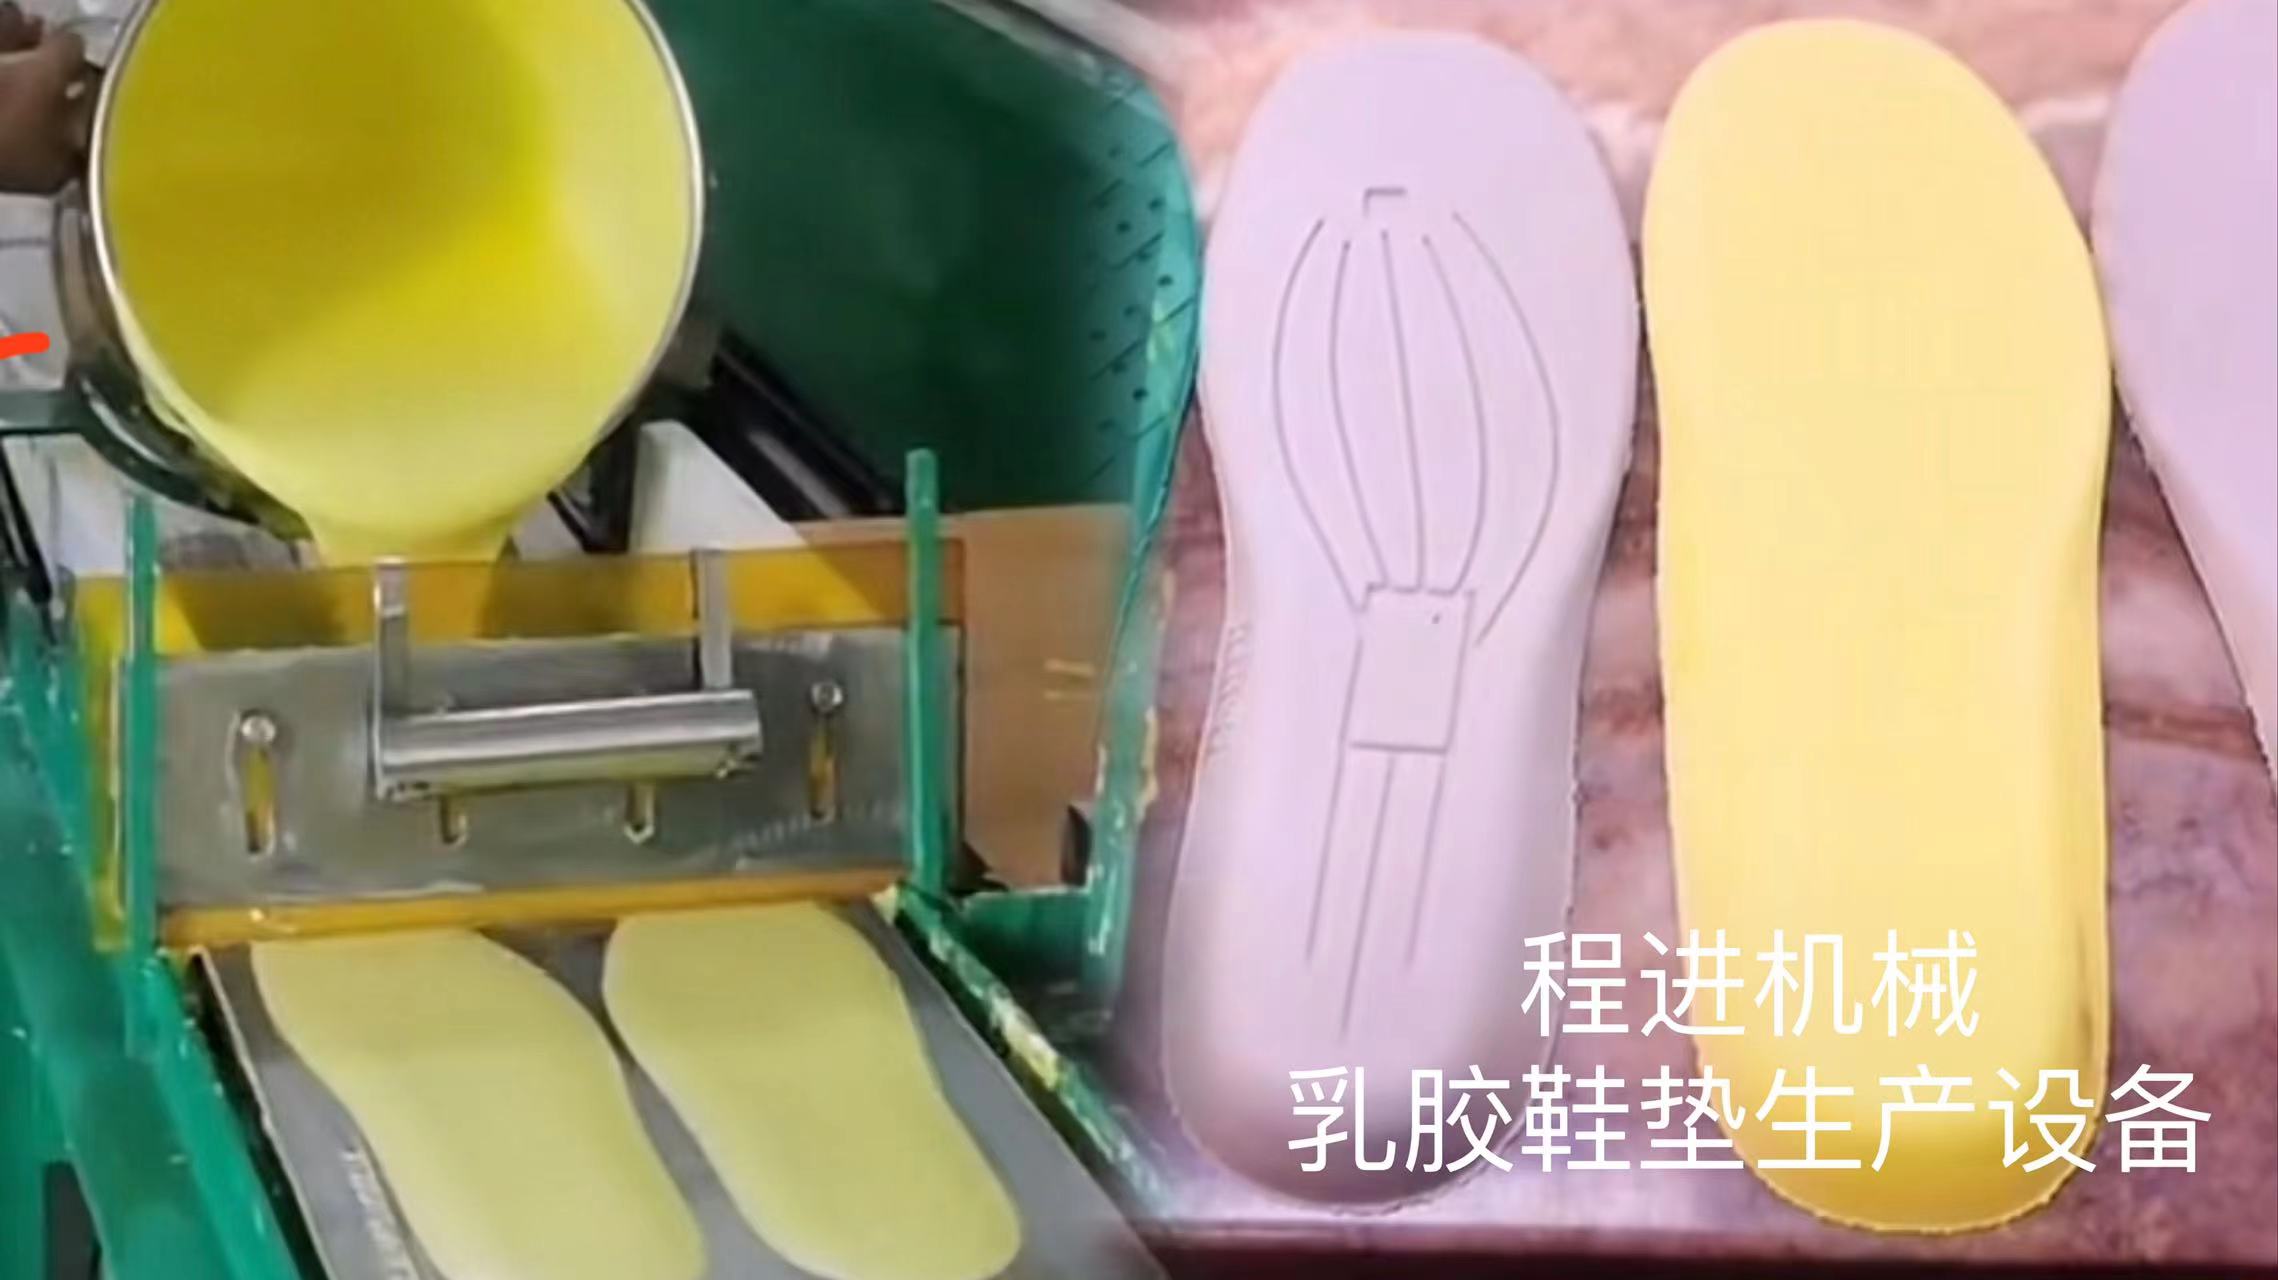 小型乳胶鞋垫生产设备 小型鞋垫生产机械是用来生产乳胶鞋垫的机械设备。